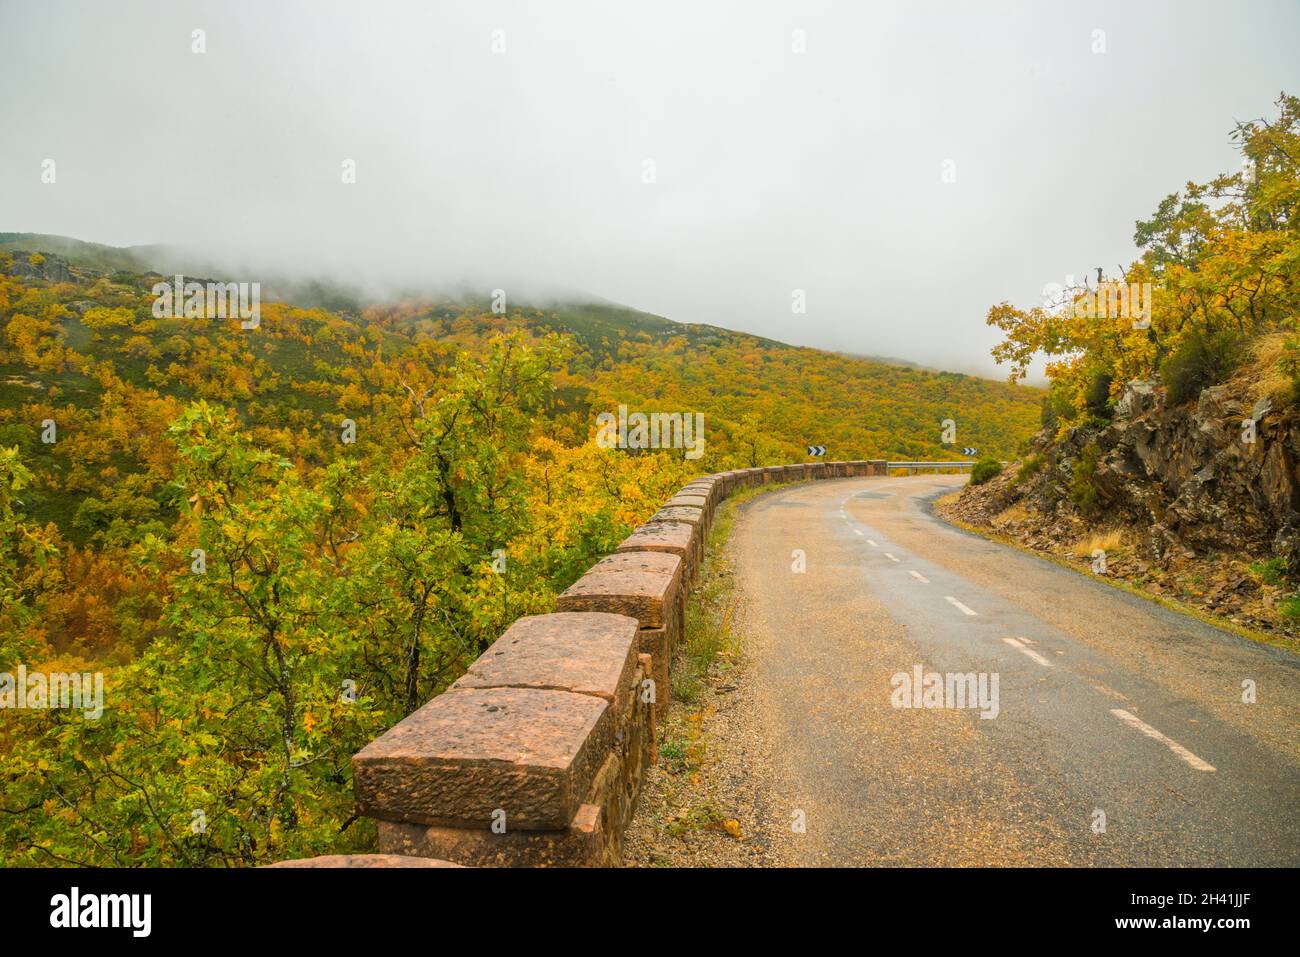 Road and autumnal landscape. Riofrio de Riaza, Segovia province, Castilla Leon, Spain. Stock Photo